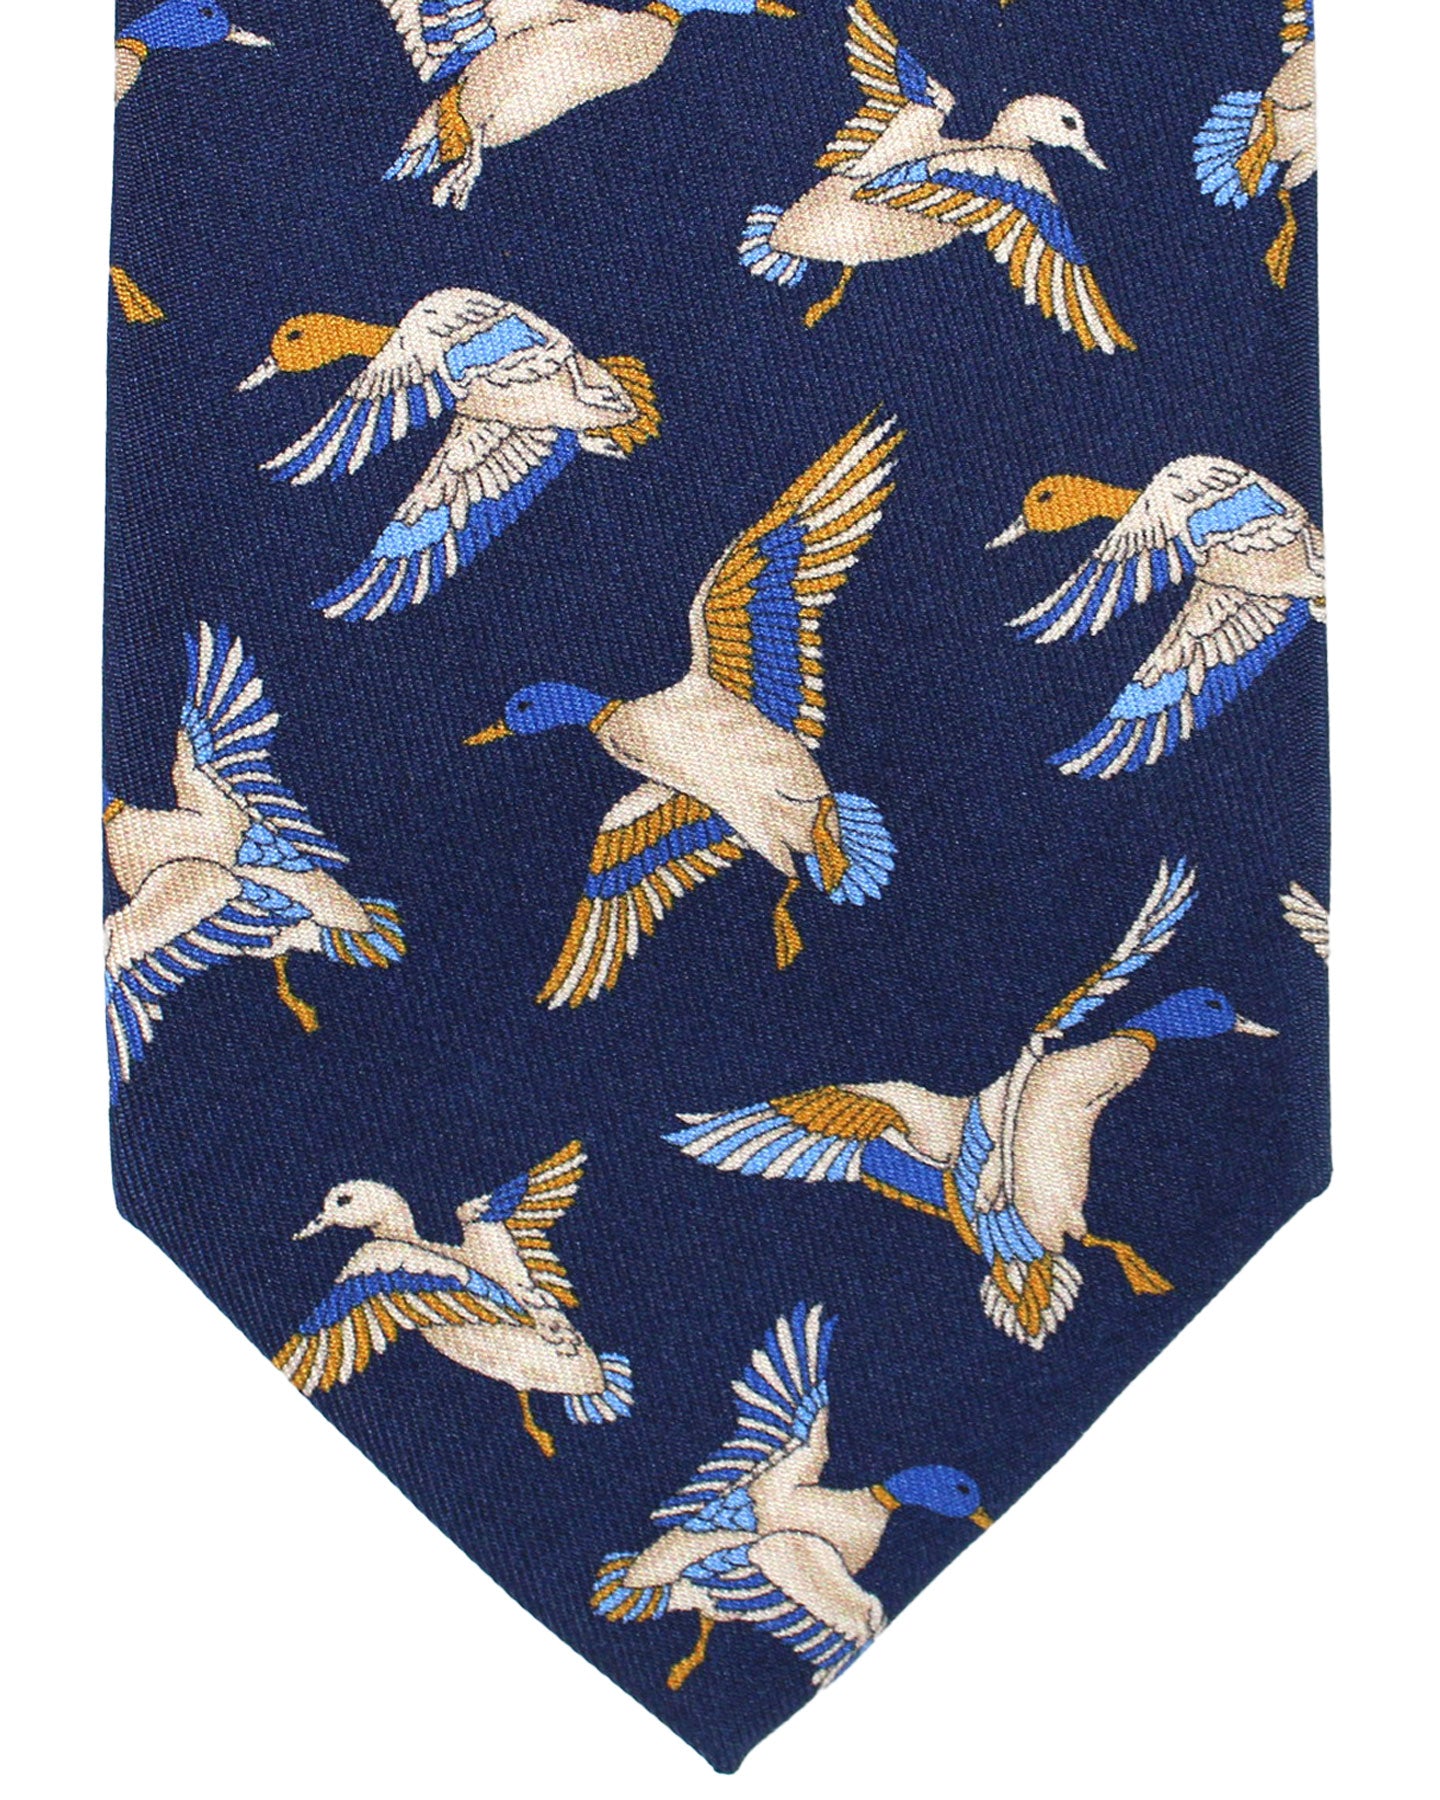 Salvatore Ferragamo Silk Tie Navy Duck Novelty Design